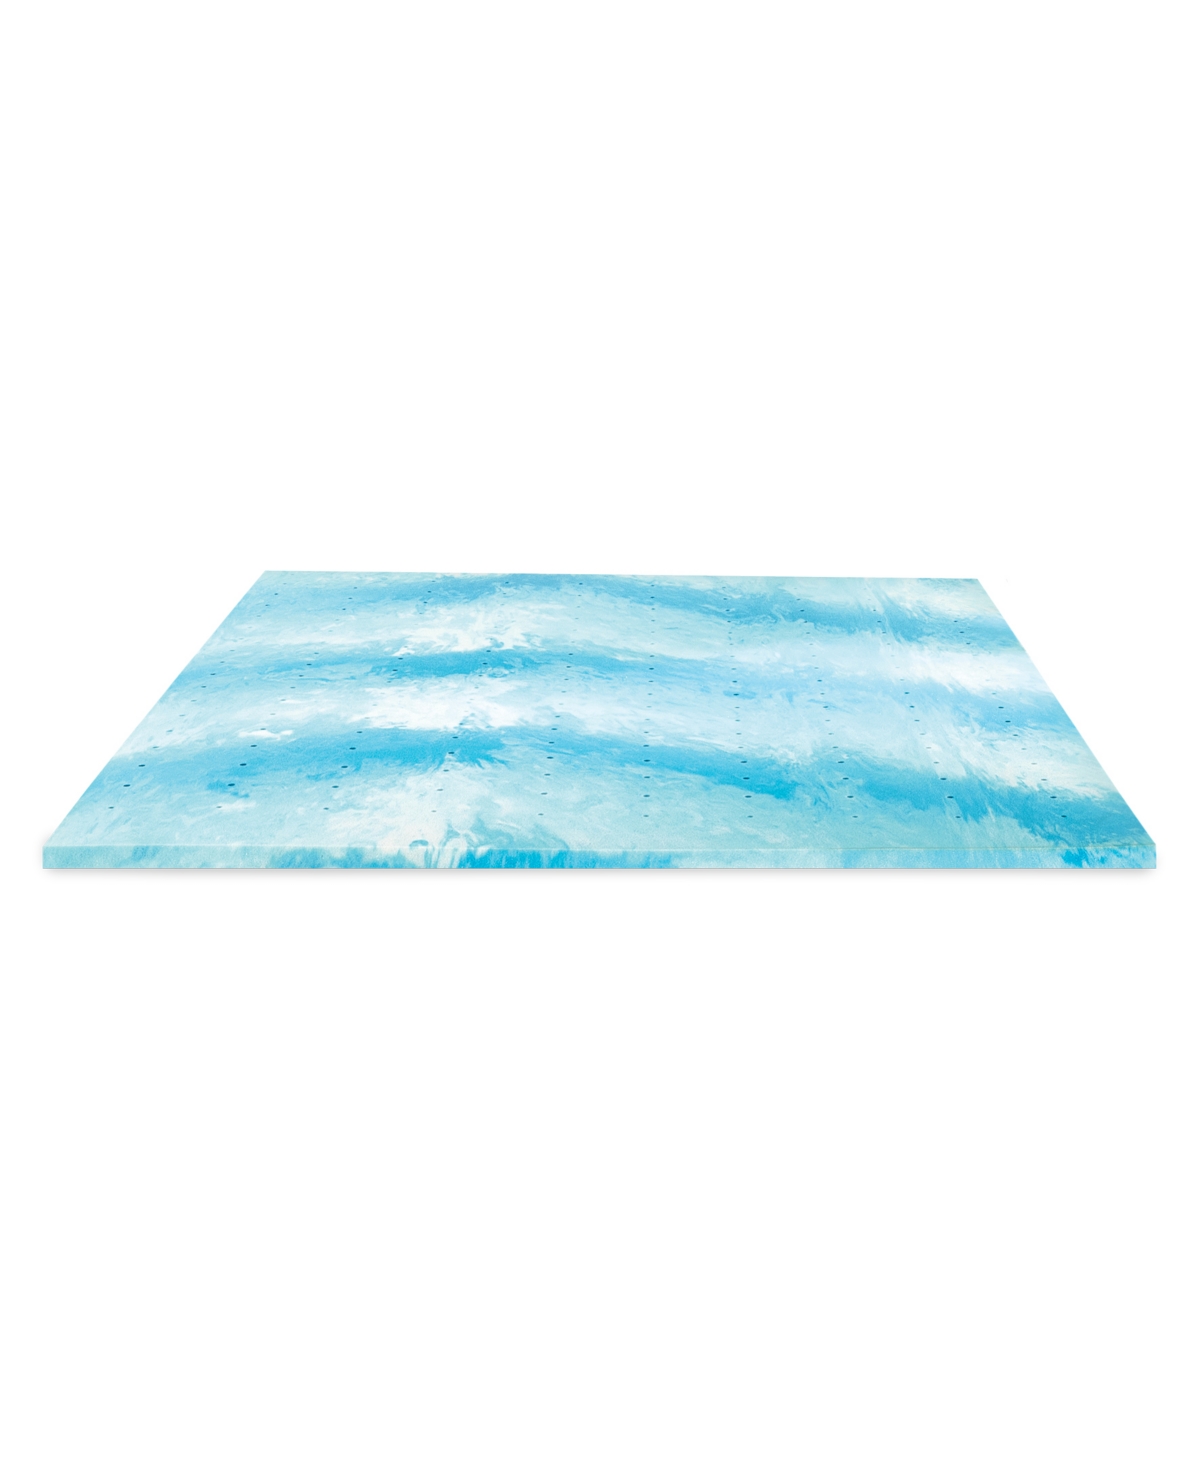 Shop Prosleep Cooling Gel Swirl 2" Memory Foam Mattress Topper, King In White,blue